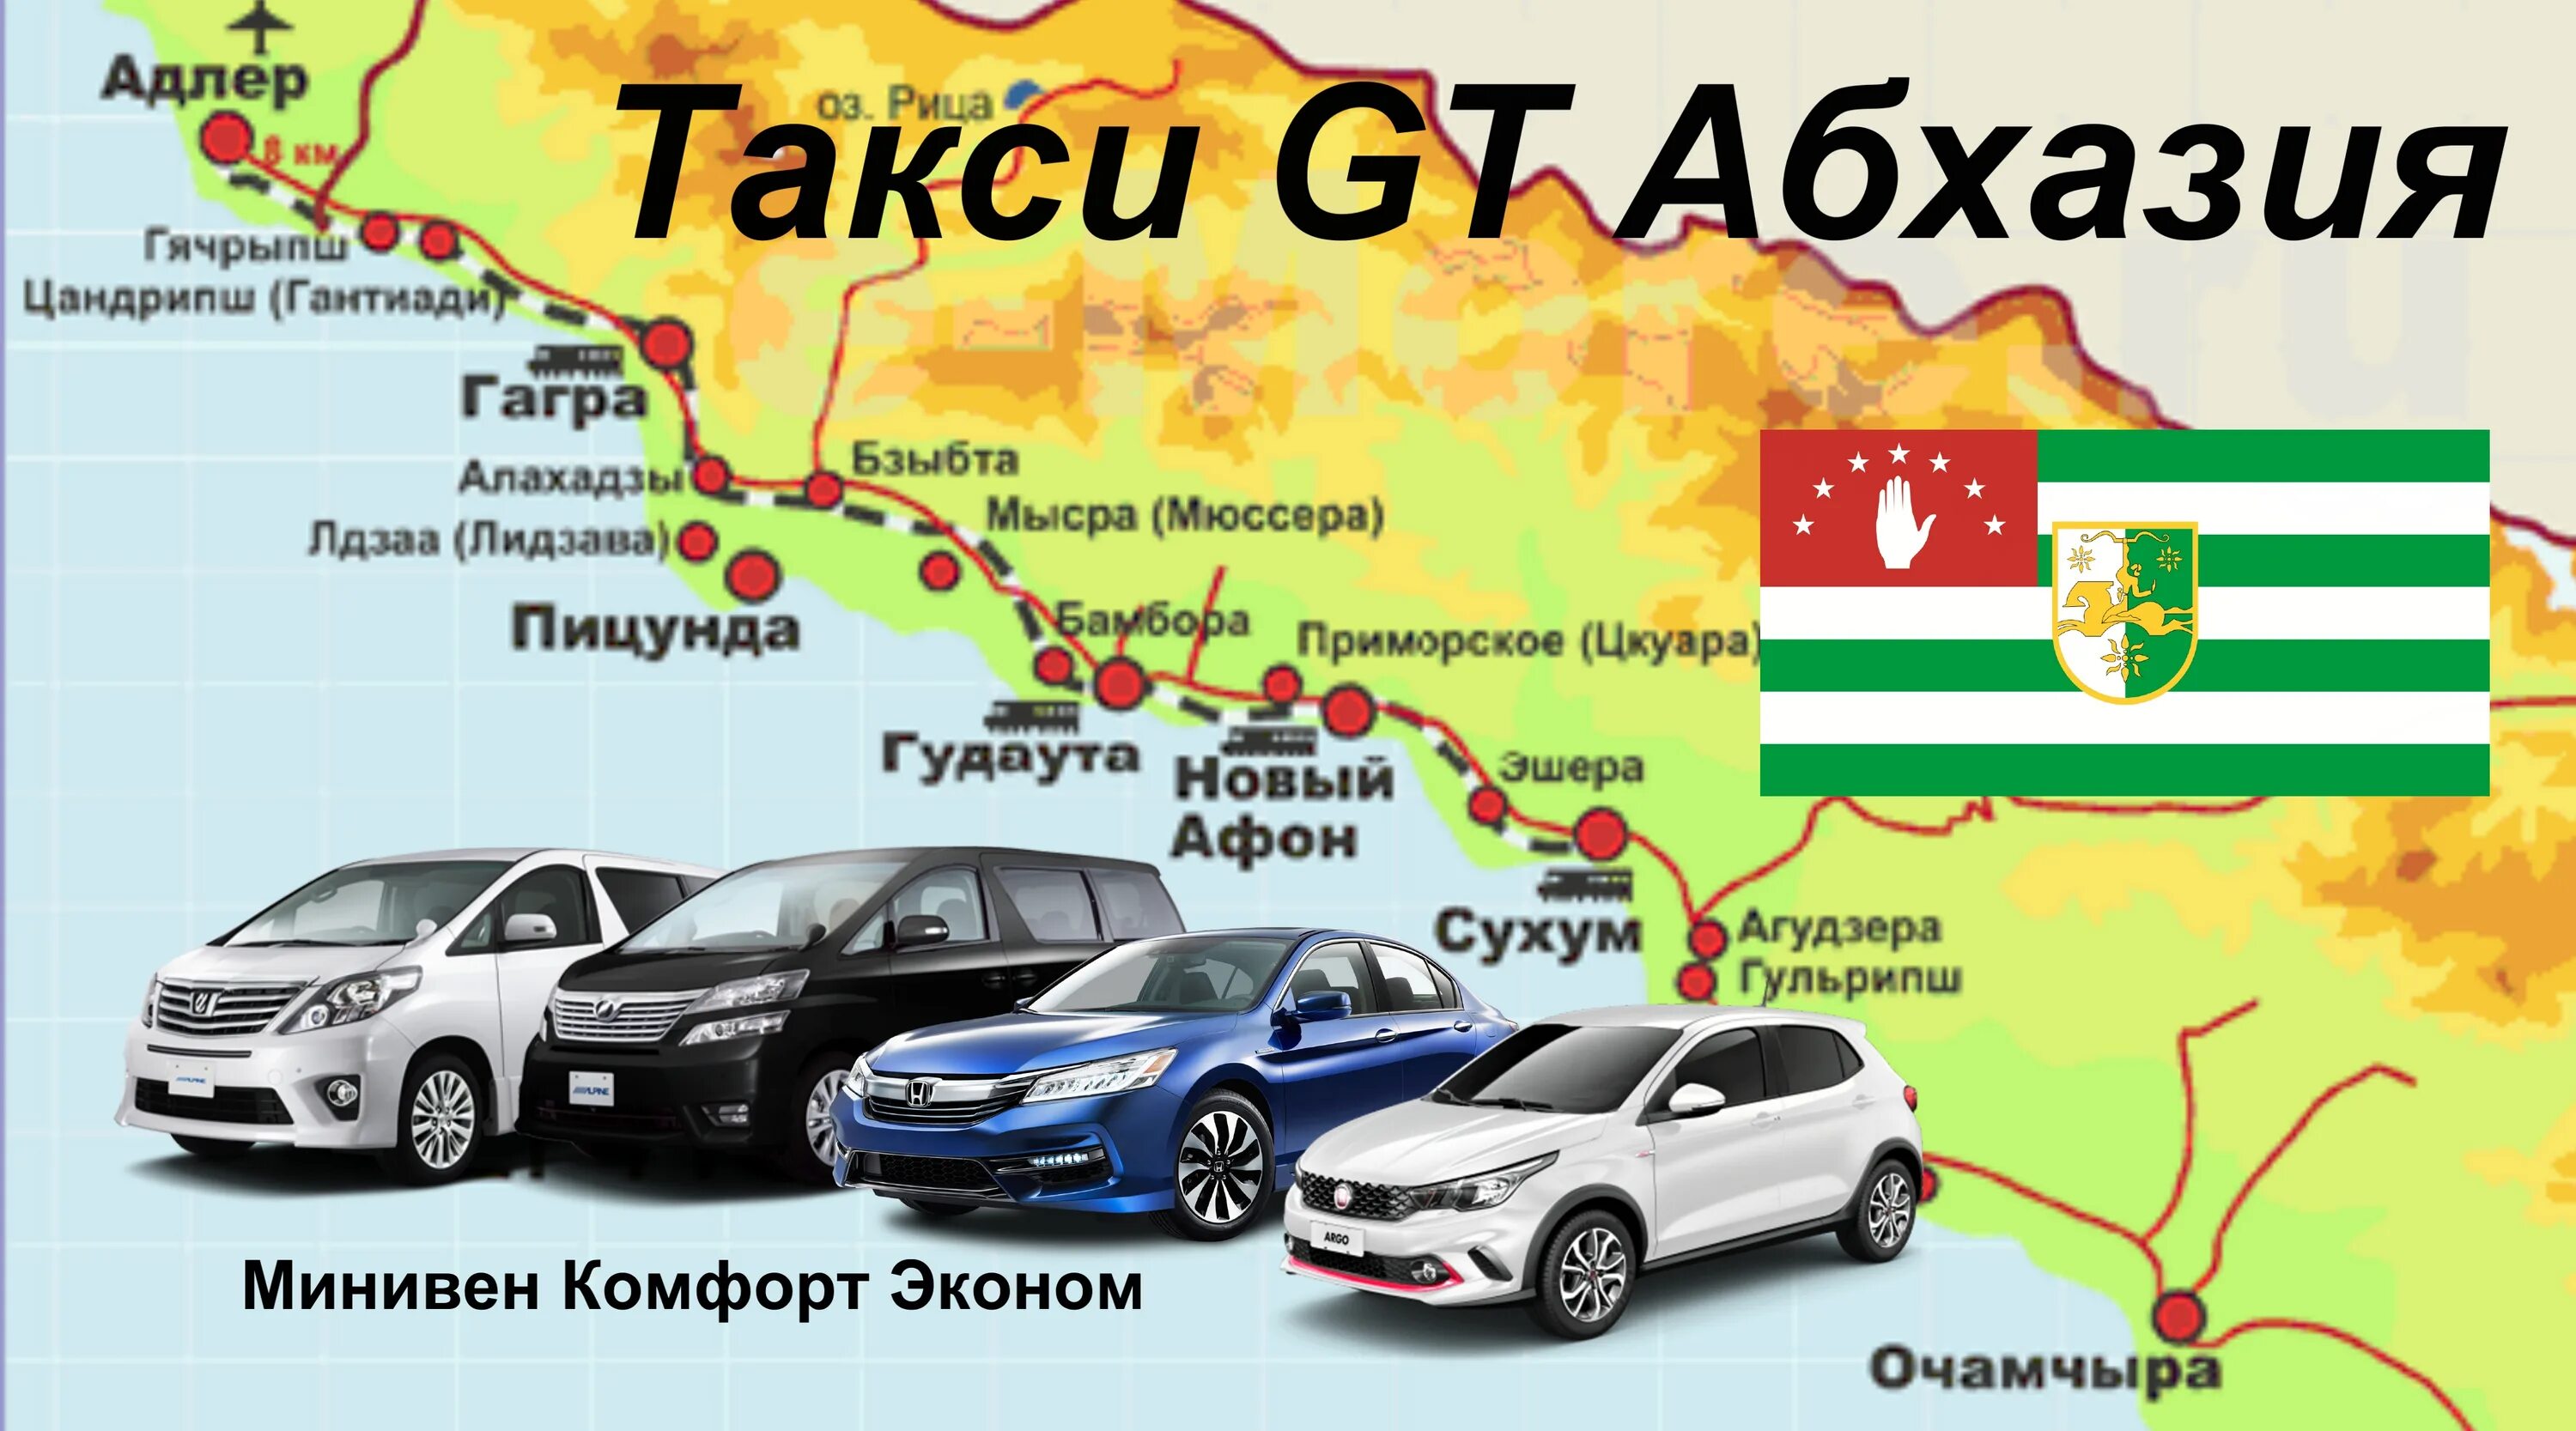 Такси в Абхазии. Такси Сухум. Такси в Сухуми. Такси в Сухуми Абхазия. Такси сочи гагра